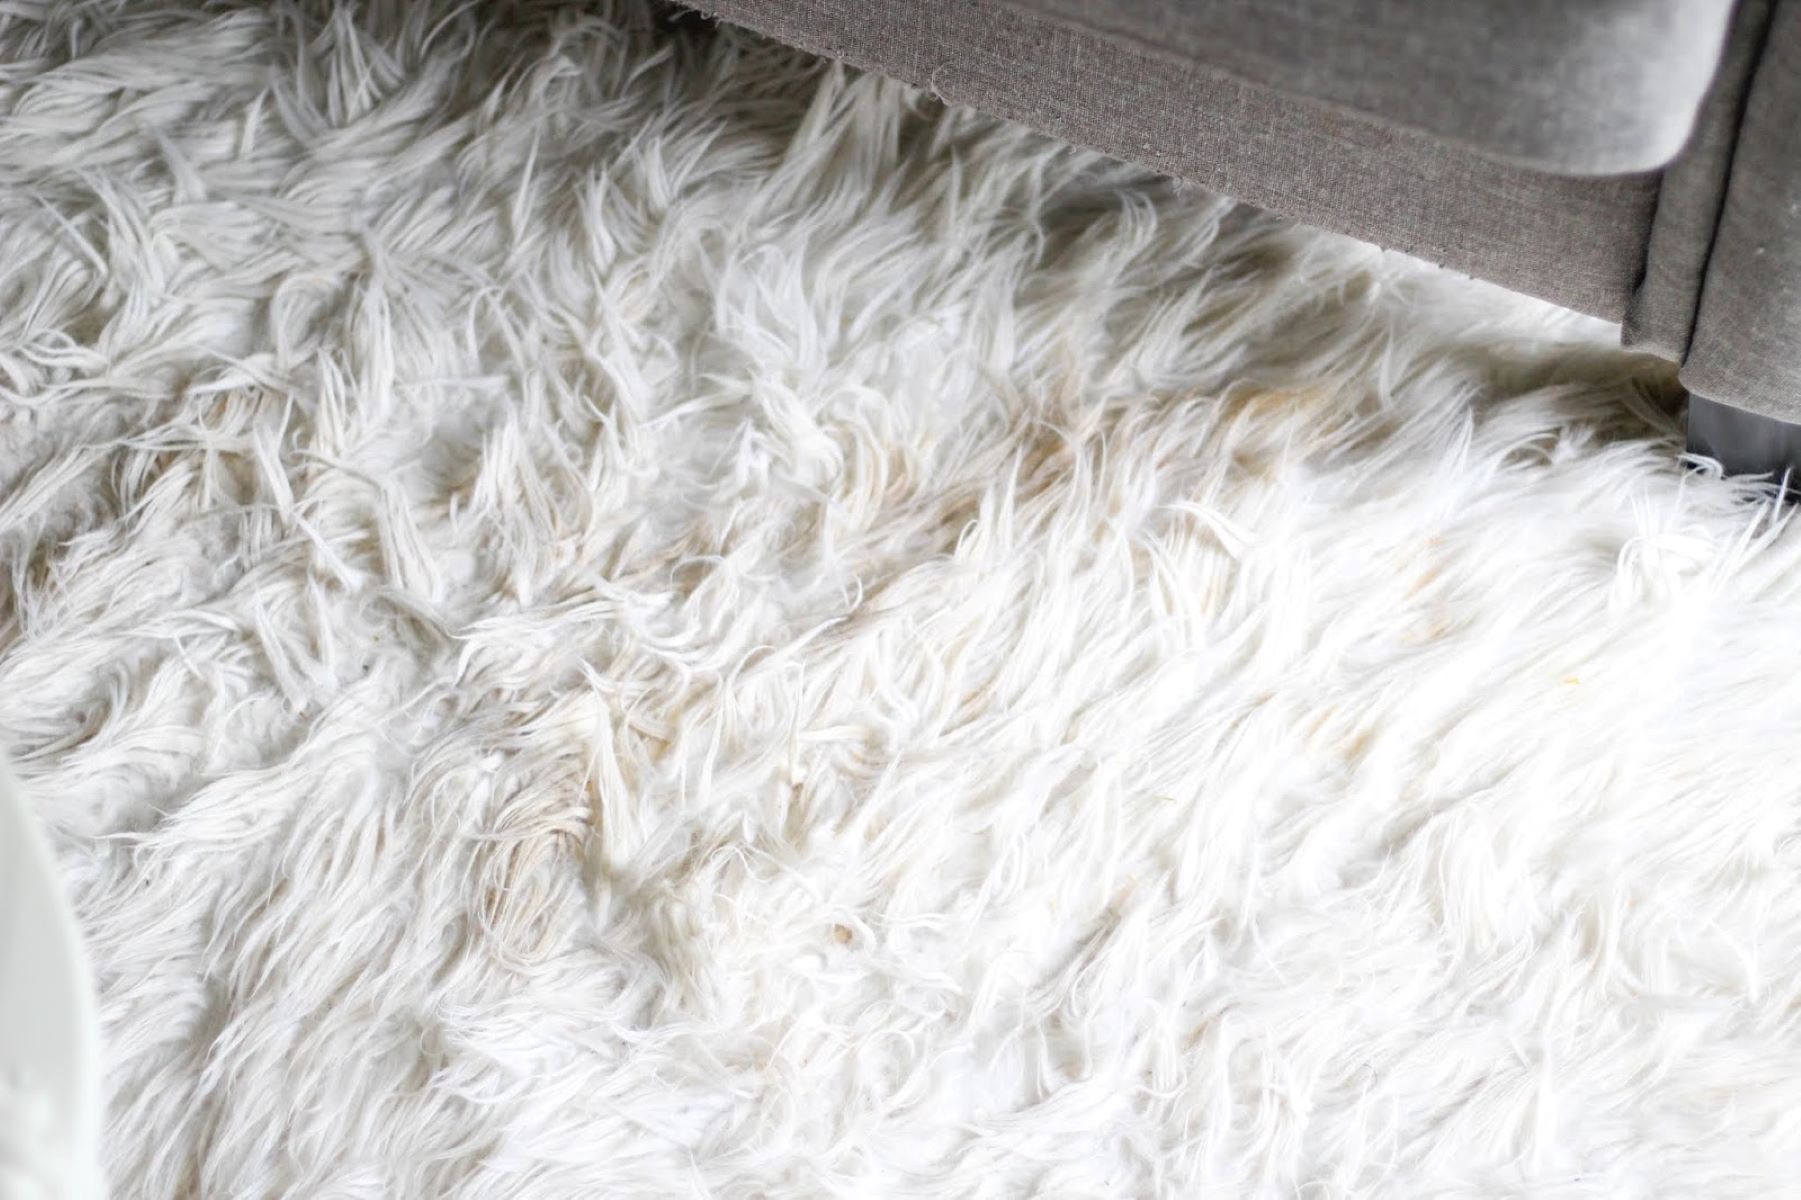 How To Clean A Fur Carpet